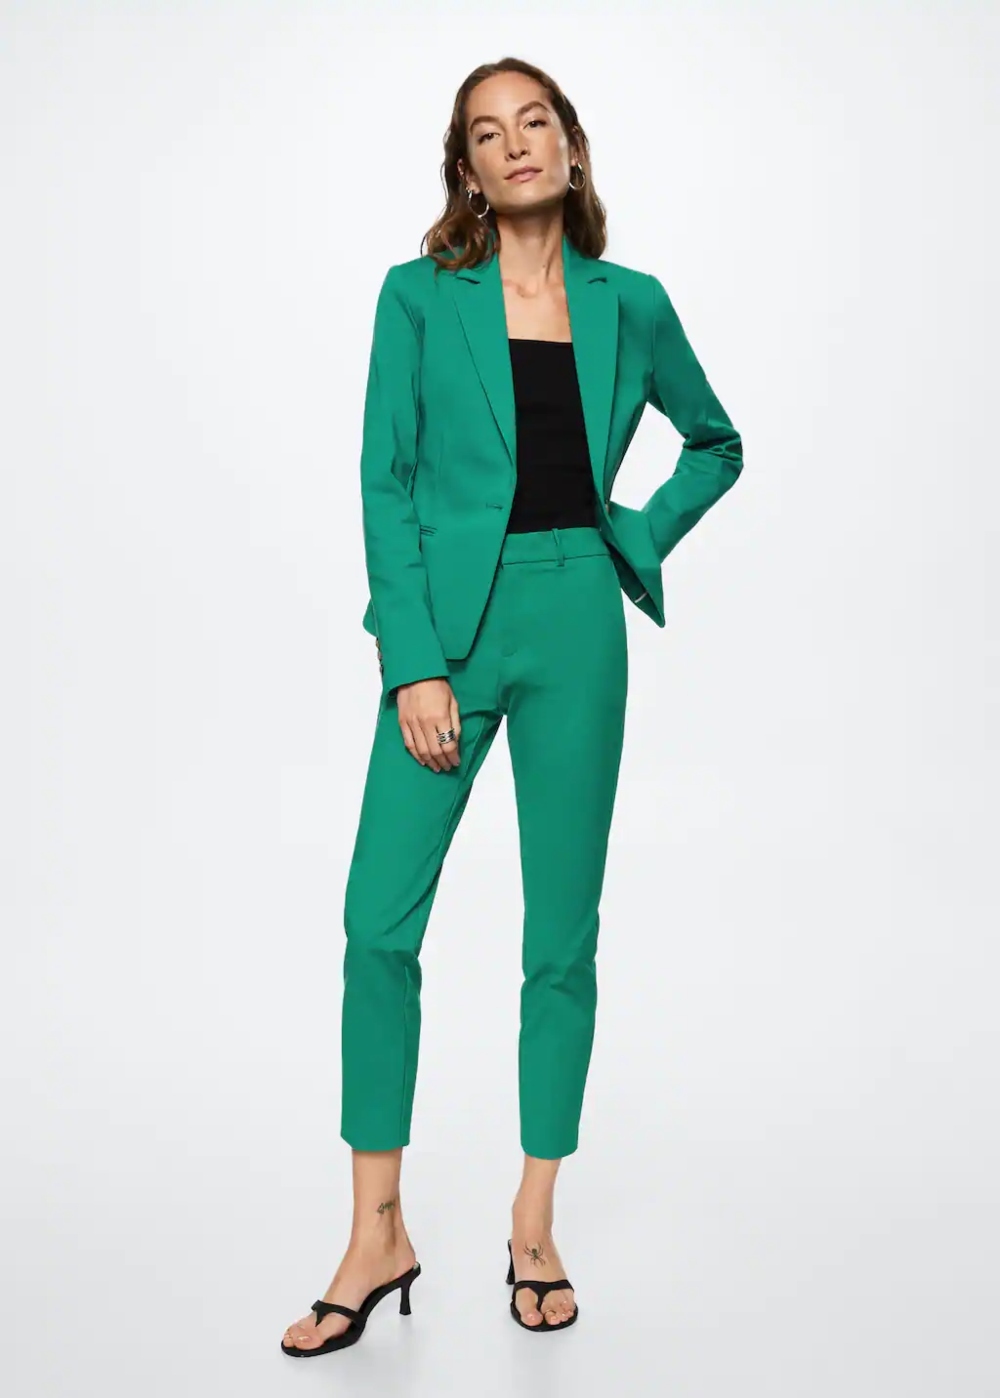 trajes de chaqueta de mujer de Mango para un look de oficina perfecto | Moda